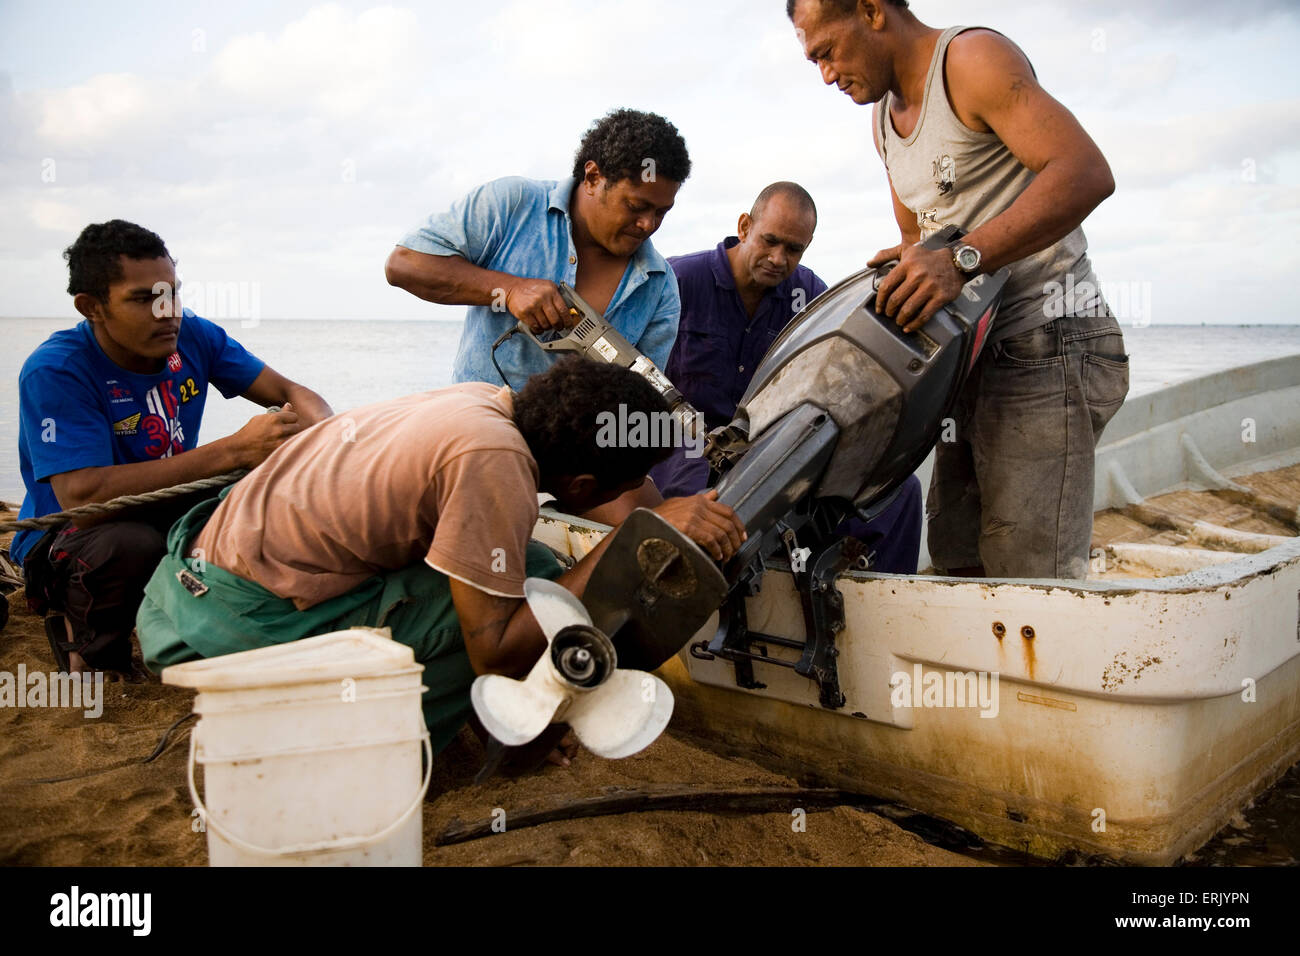 Un groupe d'hommes travaillent ensemble pour régler un moteur cassé. C'est l'un des deux moteurs les villages sont à pêcher le récif extérieur. Banque D'Images